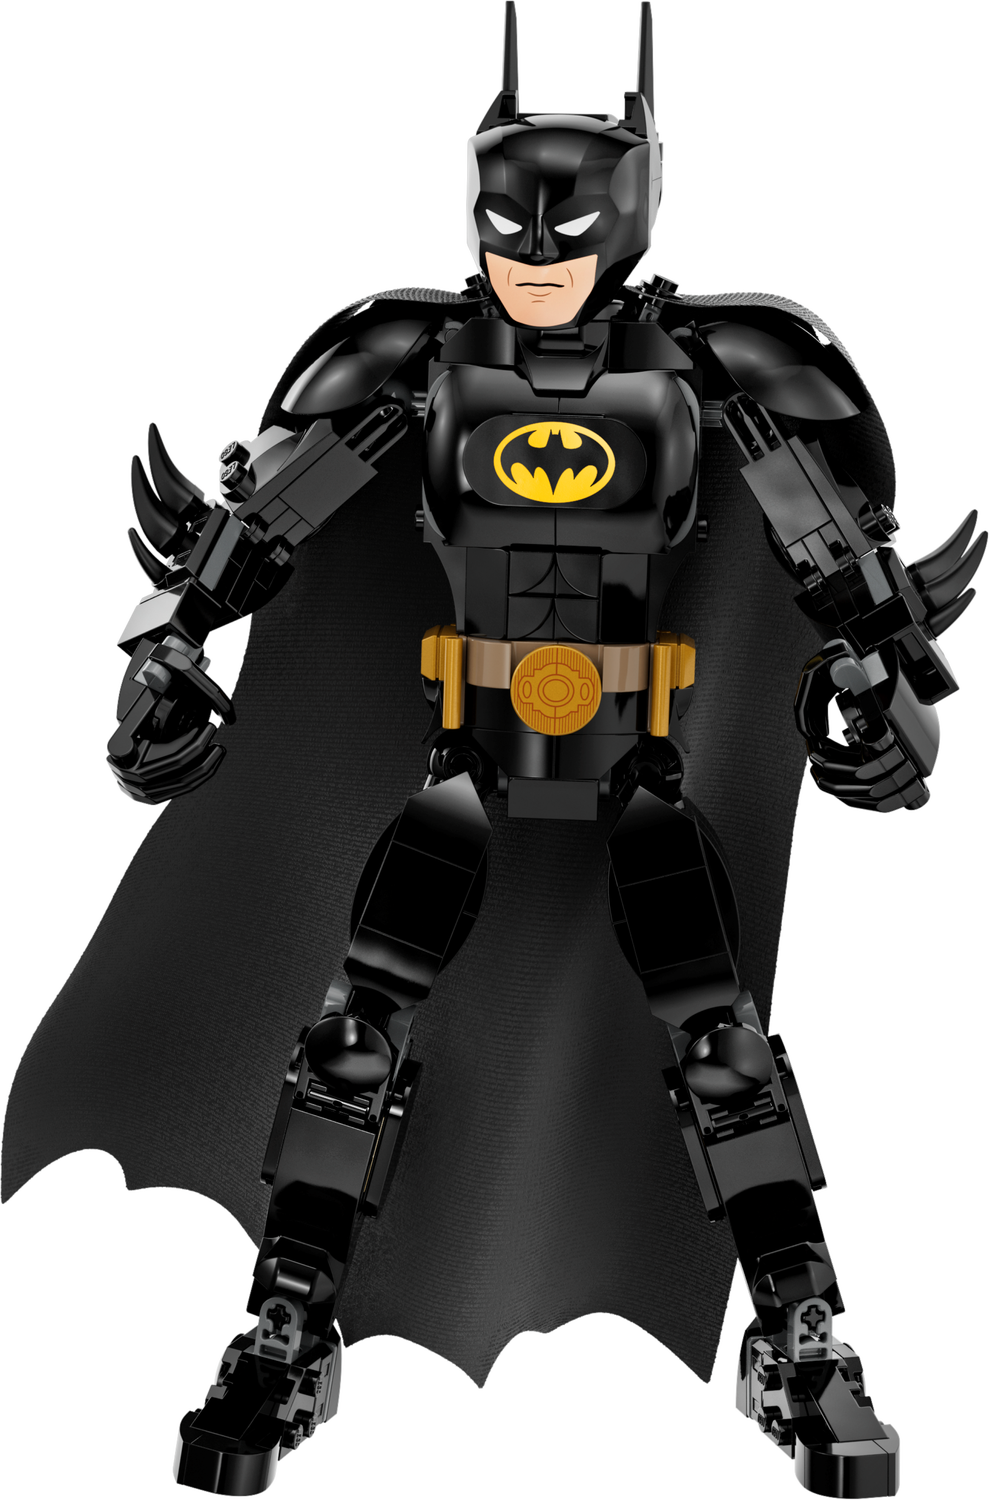 Lego Batman PNG Image